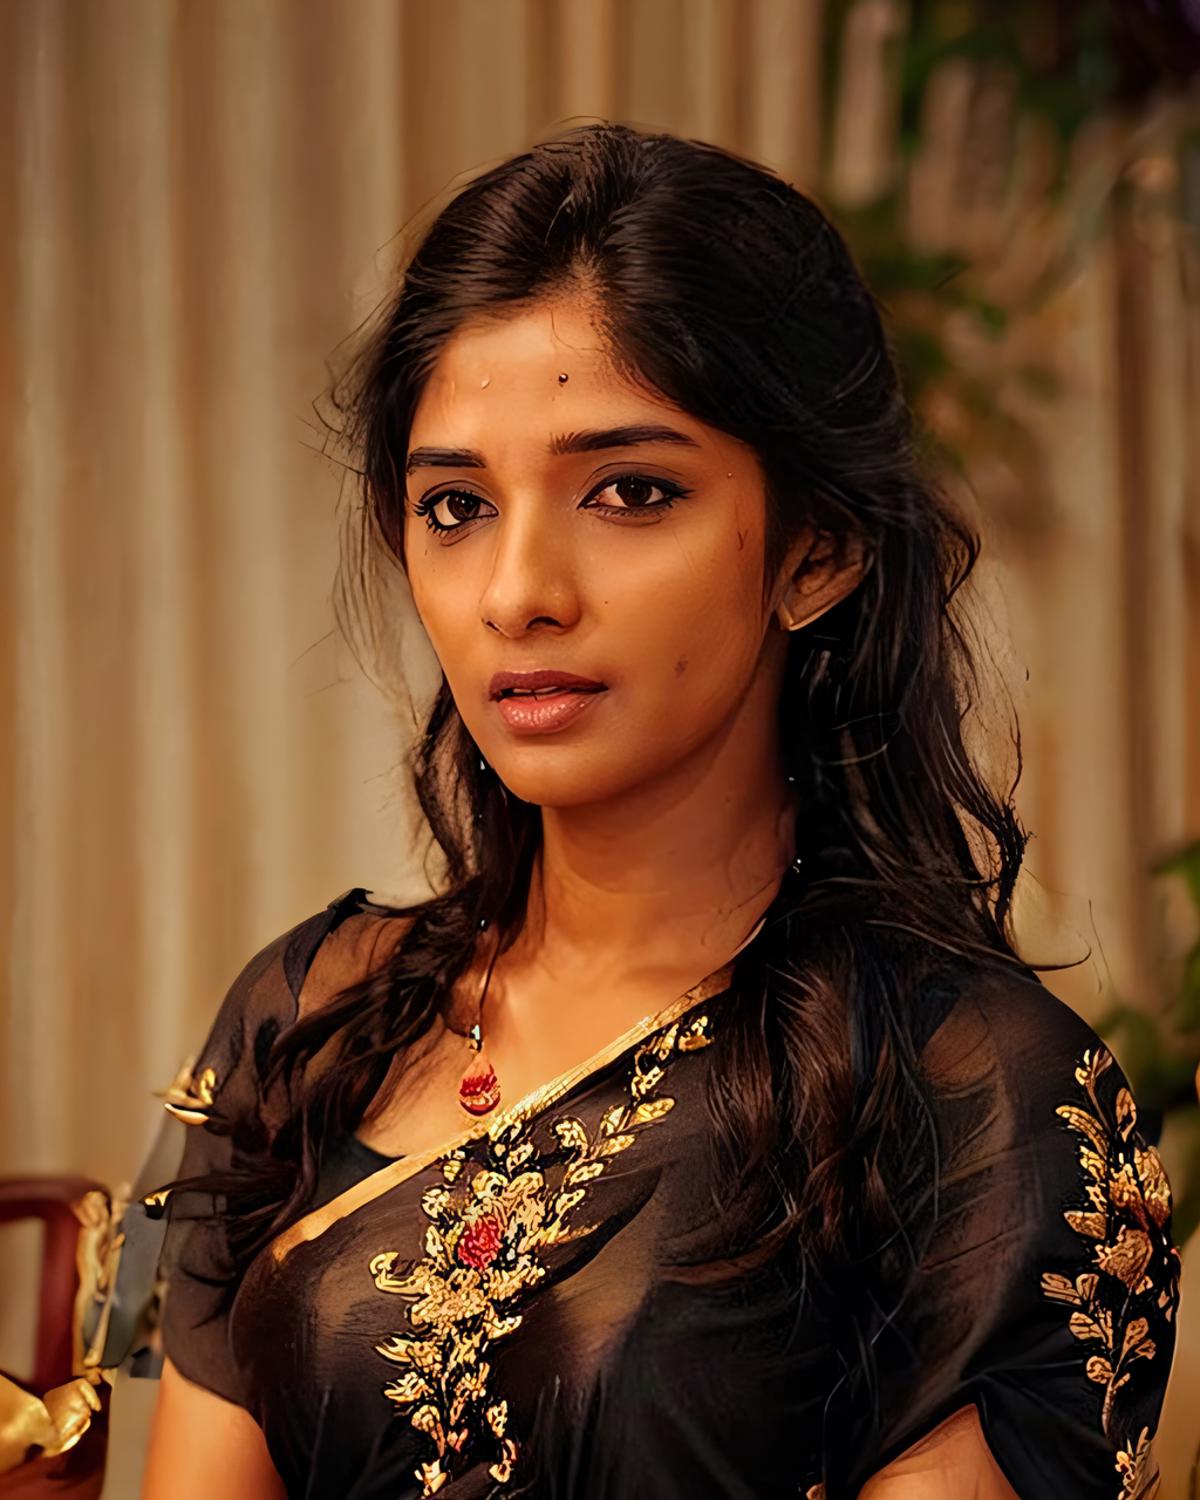 Nyla Usha - Indian Actress/ RJ (SD1.5) image by Desi_Cafe